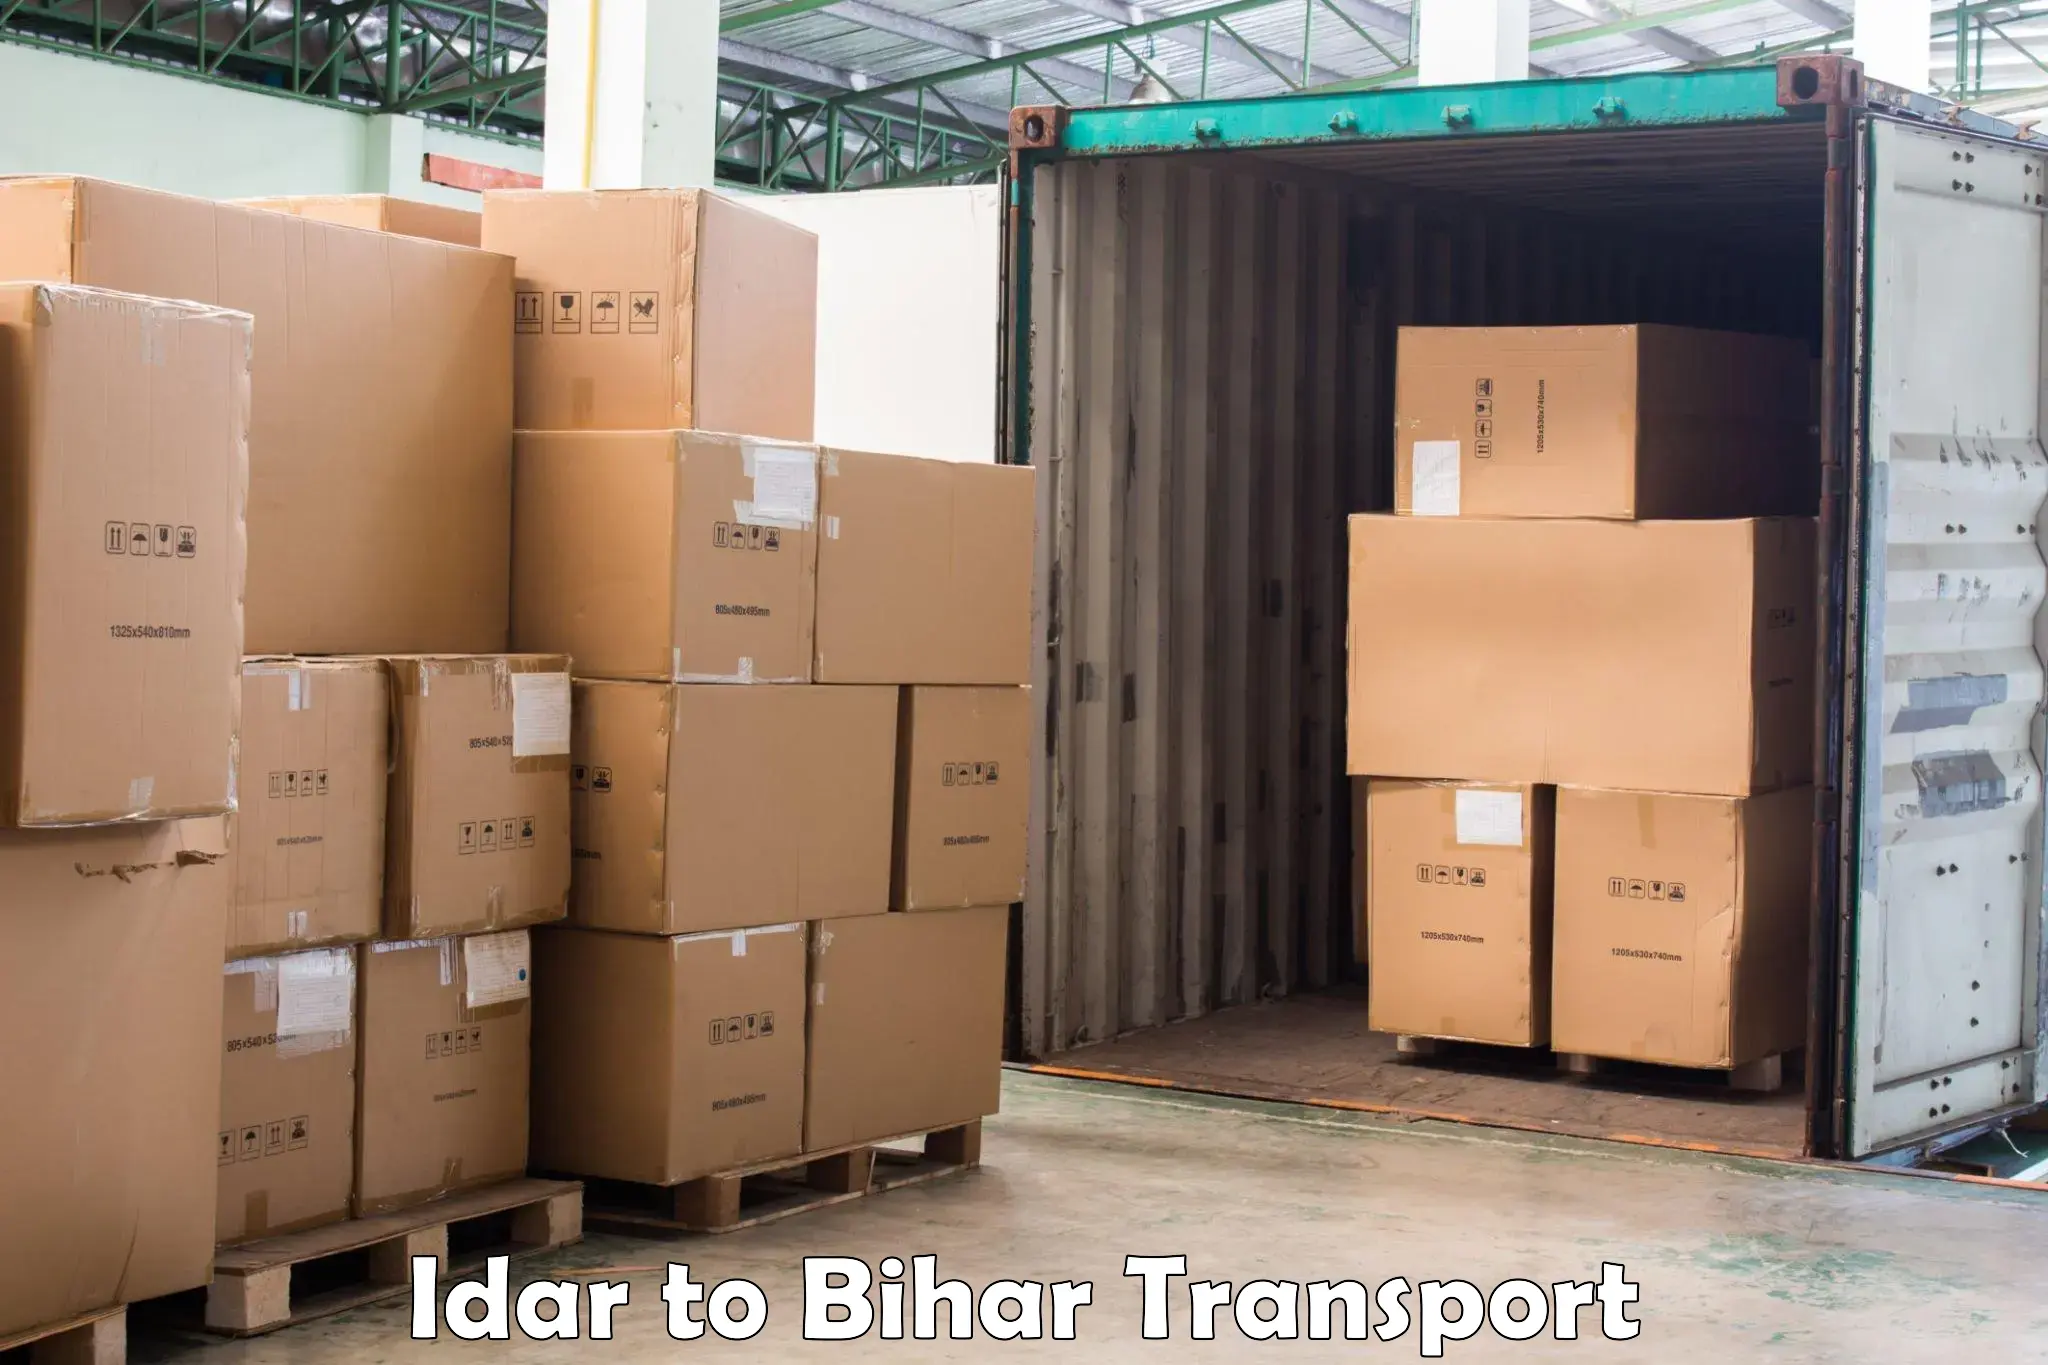 Delivery service Idar to Bihar